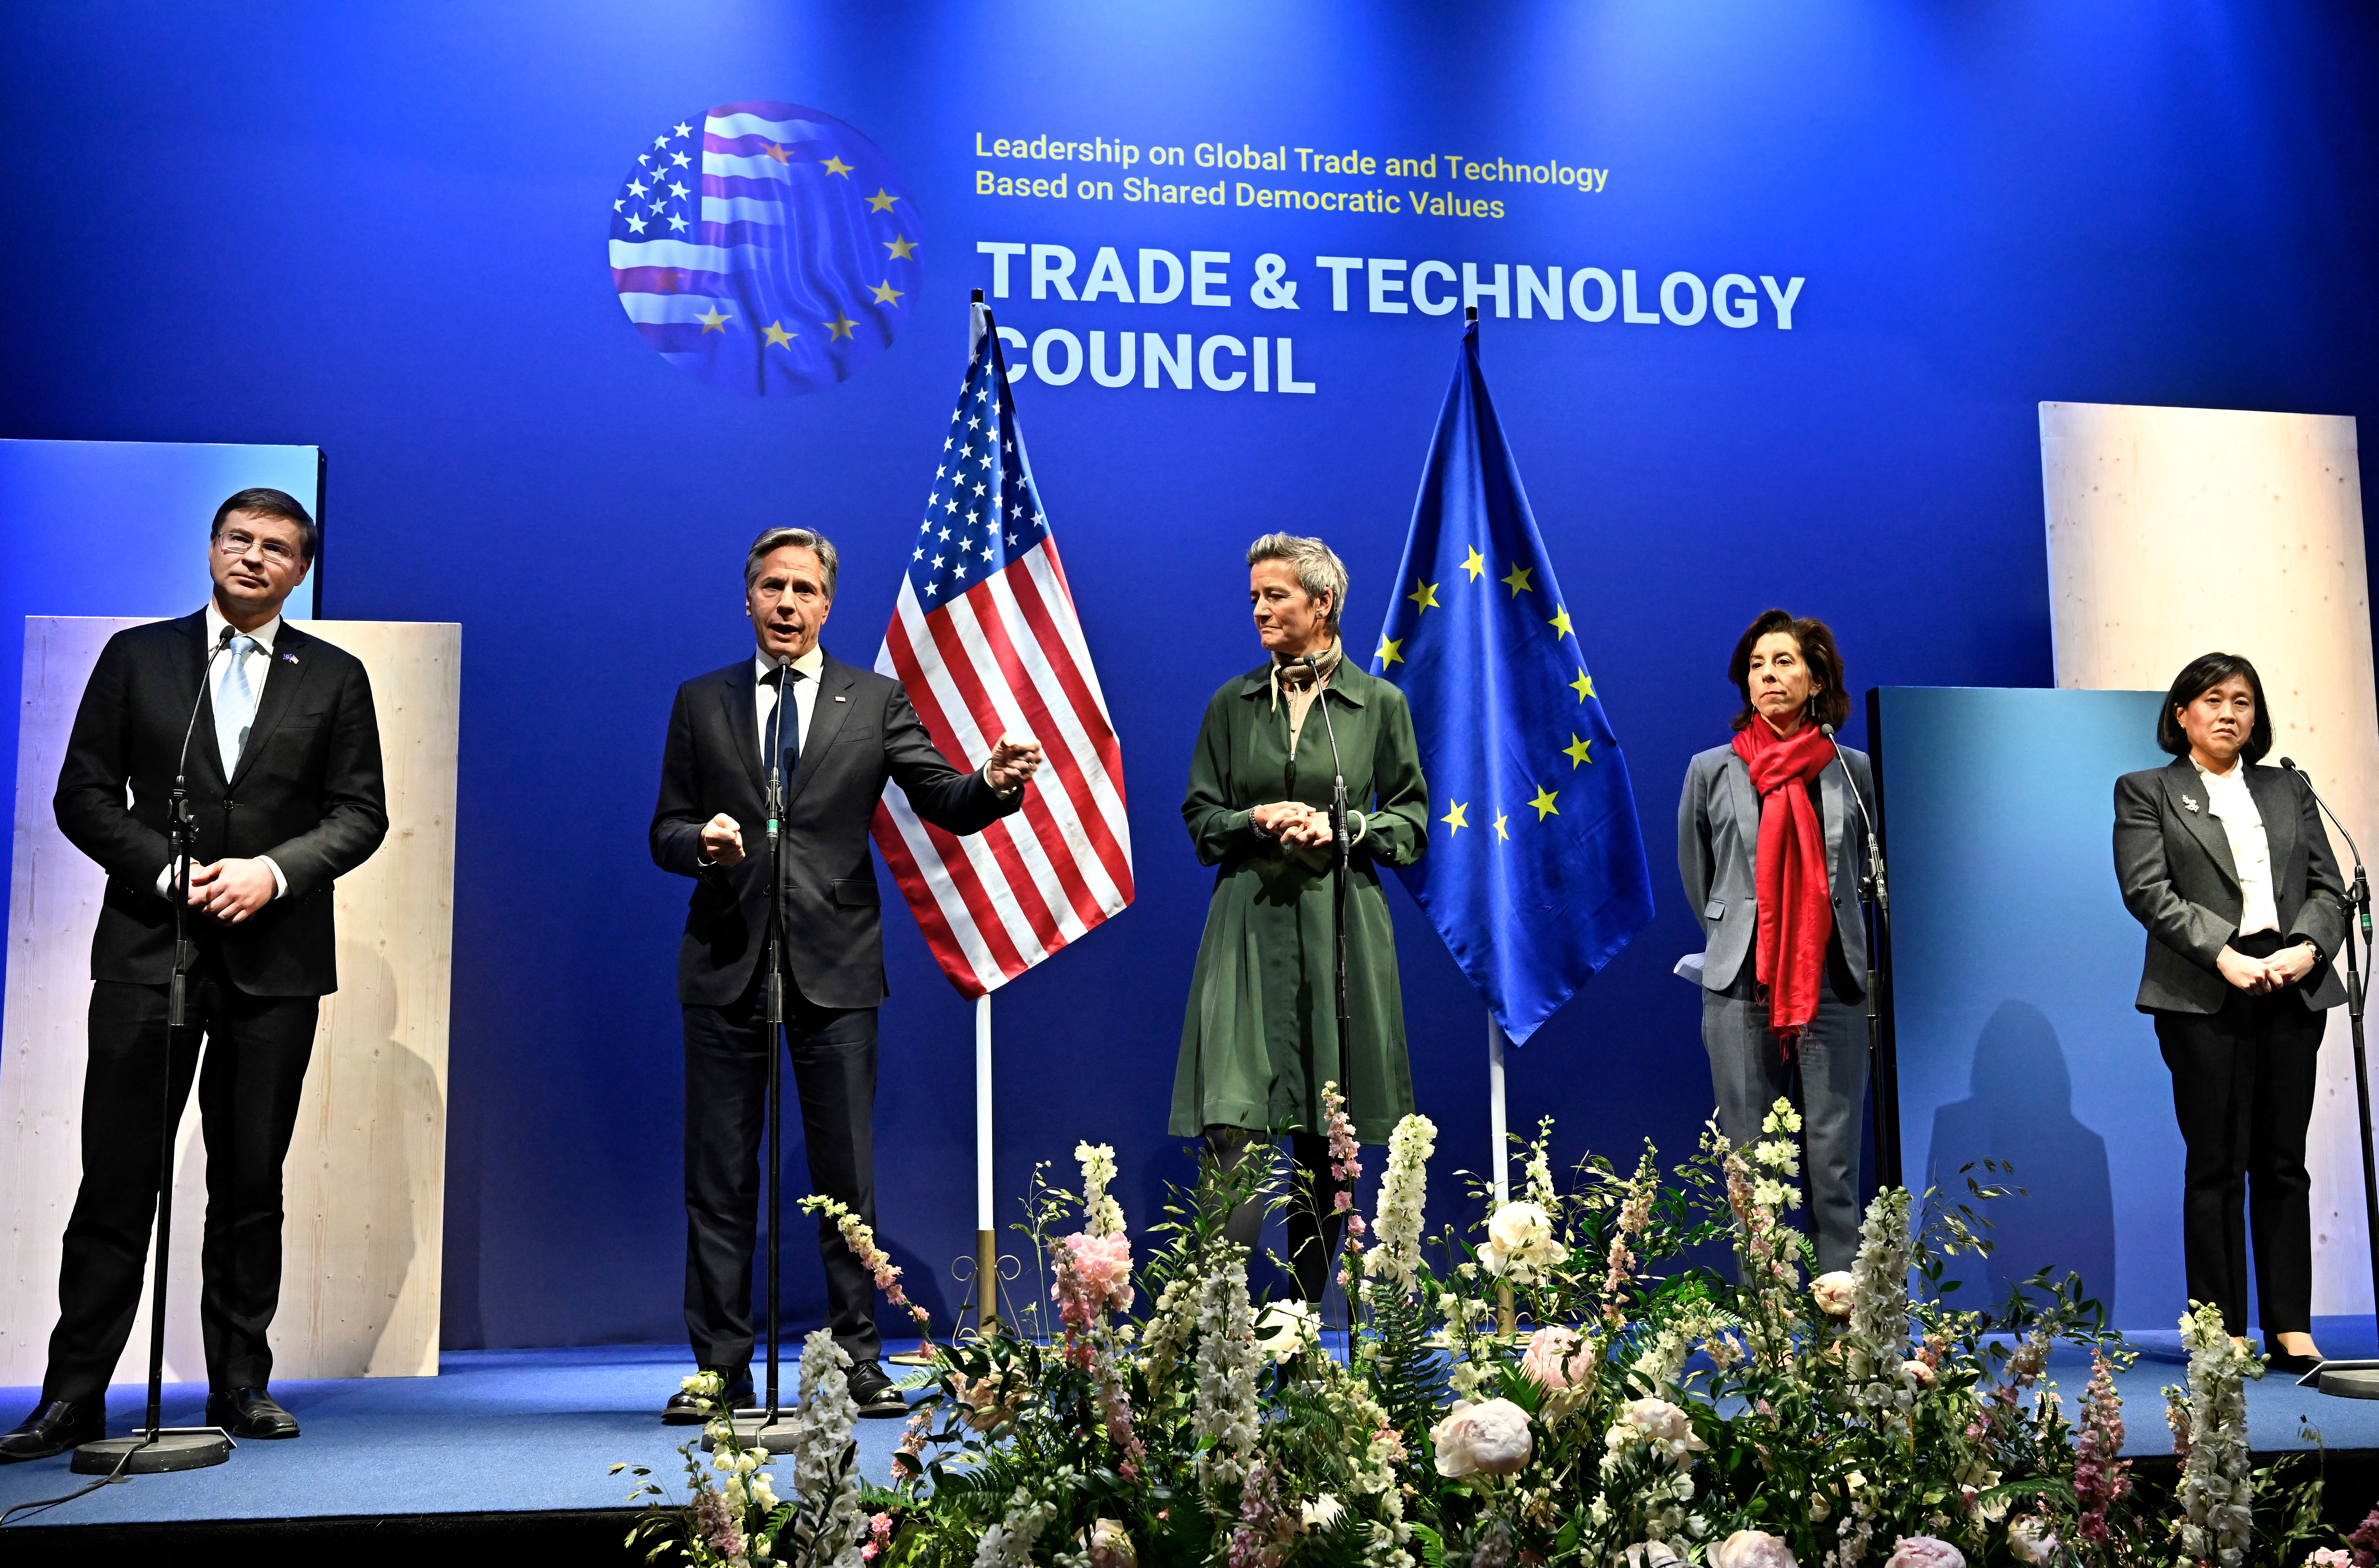 El Comisario de Comercio de la UE, Valdis Dombrovskis; el Secretario de Estado de los EEUU, Antony Blinken; la Comisaria de Competitividad de la UE, Margrethe Vestager; la Secretaria de Comercio de los EEUU, Gina Raimondo; y la Representante de Comercio de los EEUU, Katherine Tai, asisten a una conferencia de prensa final en relación con la reunión del TTC en Lulea, Suecia (Agencia de noticias TT/Jonas Ekstromer vía REUTERS)